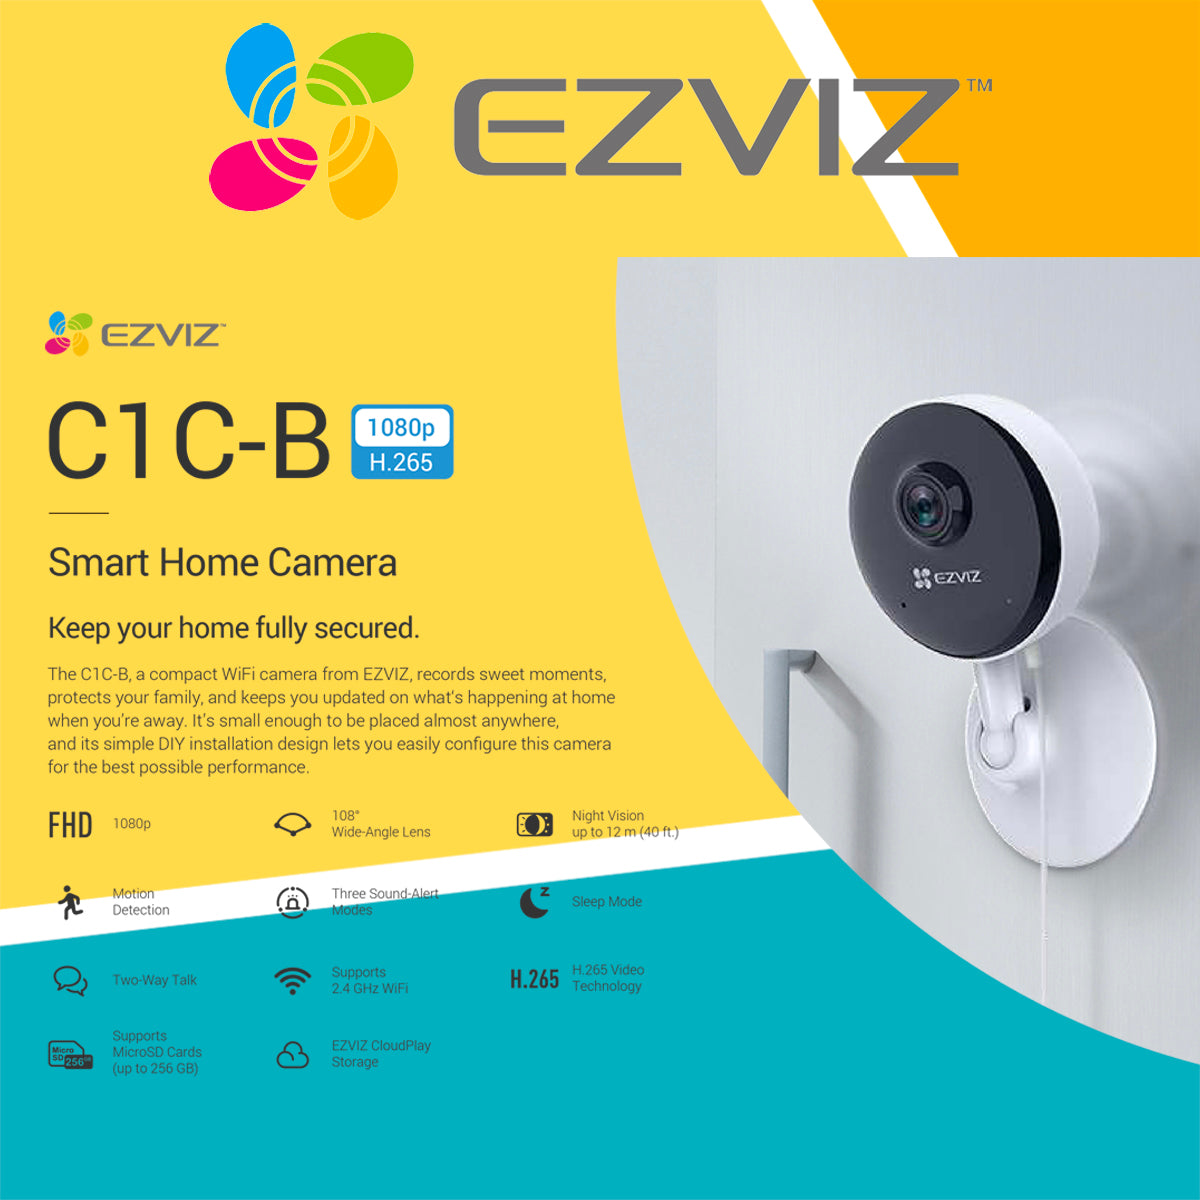 EZVIZ C1C-B 1080p smart indoor camera with integrated alarm system